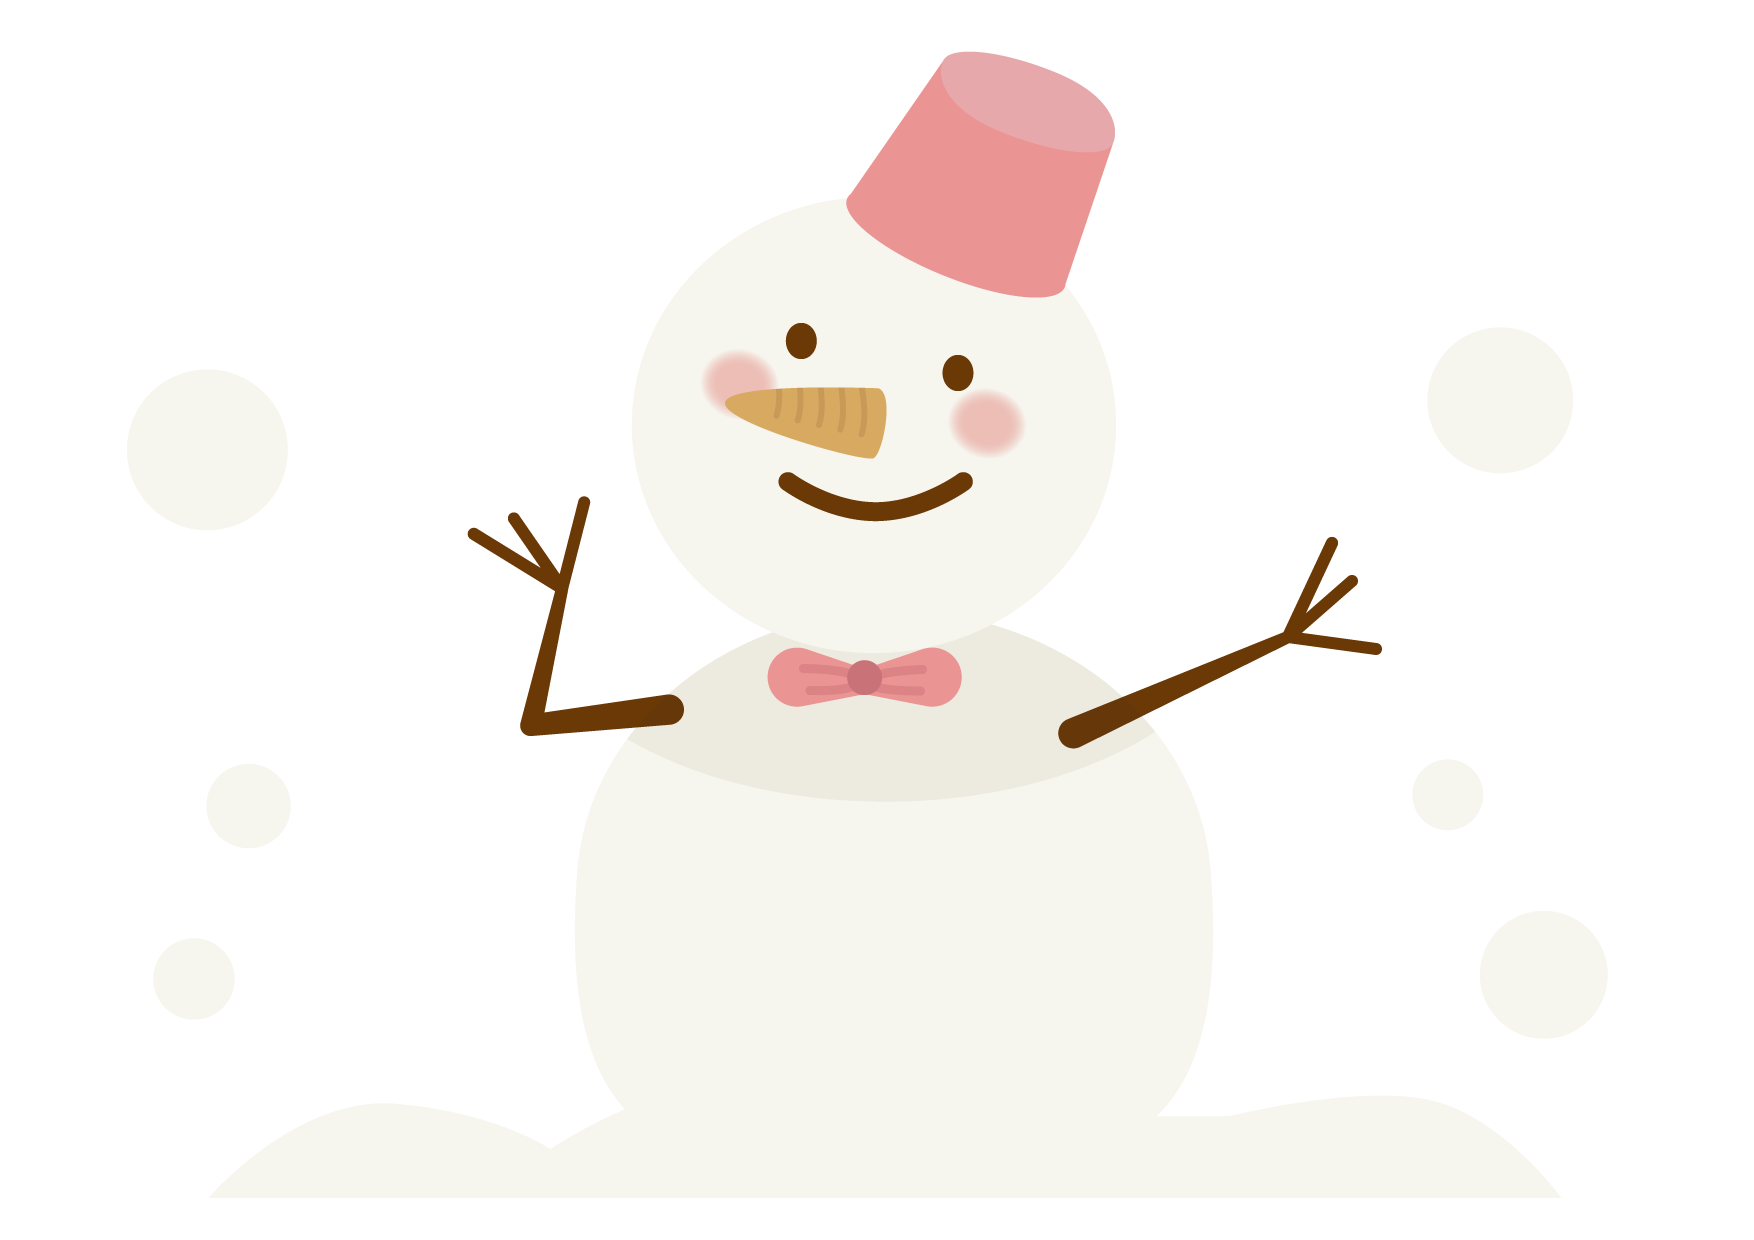 可愛いイラスト無料 雪だるま Free Illustration Snowman 公式 イラスト素材サイト イラストダウンロード